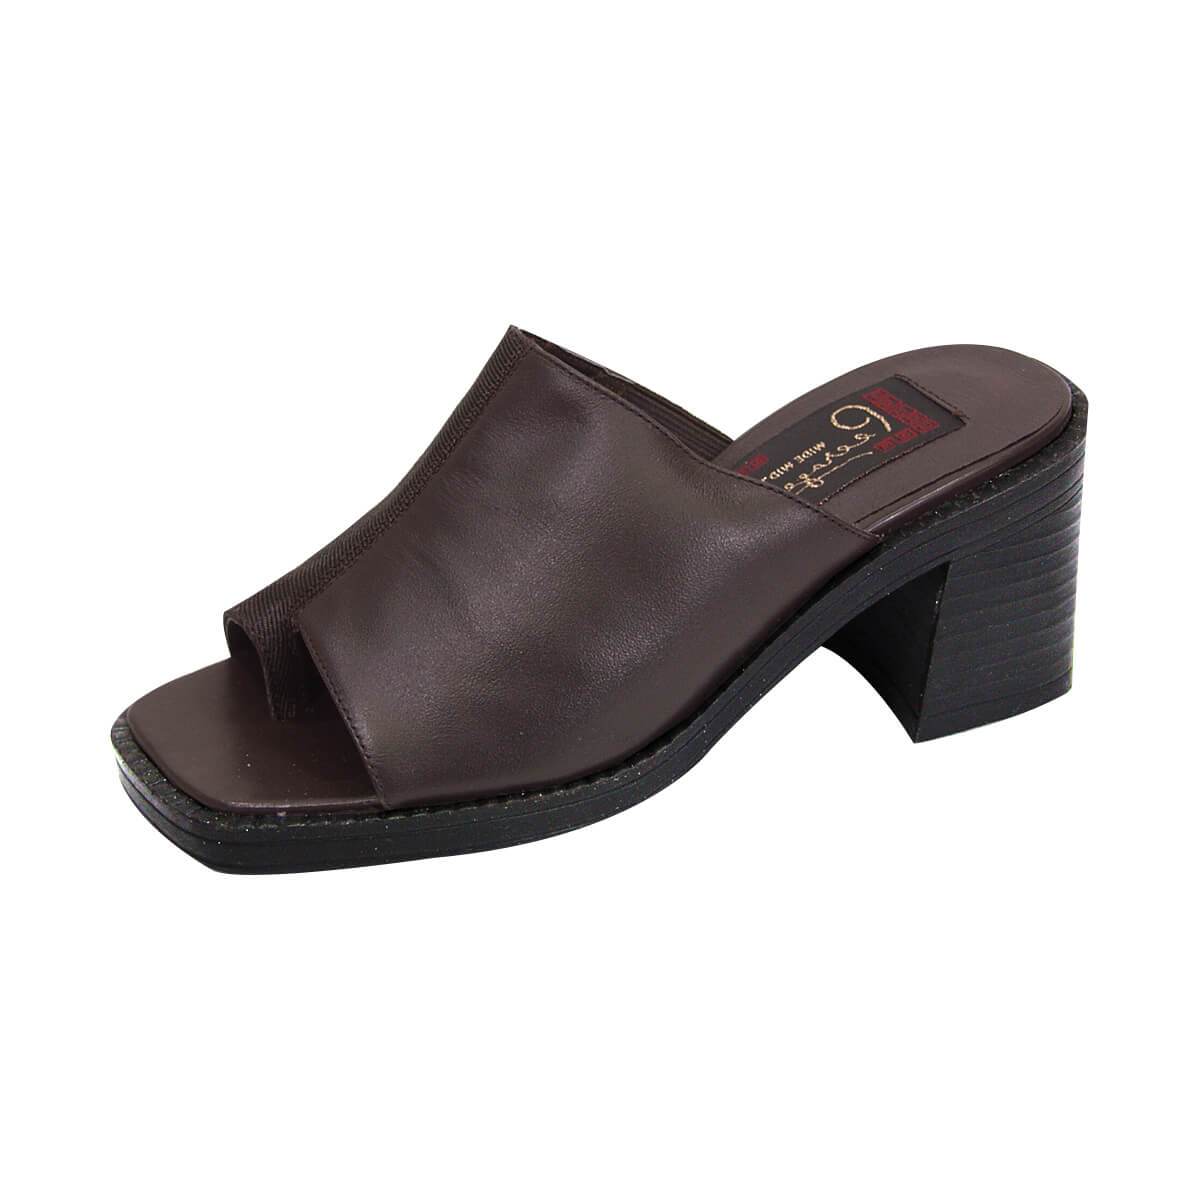 Peerage Adeline Women's Wide Width Comfort Leather Heeled Sandals